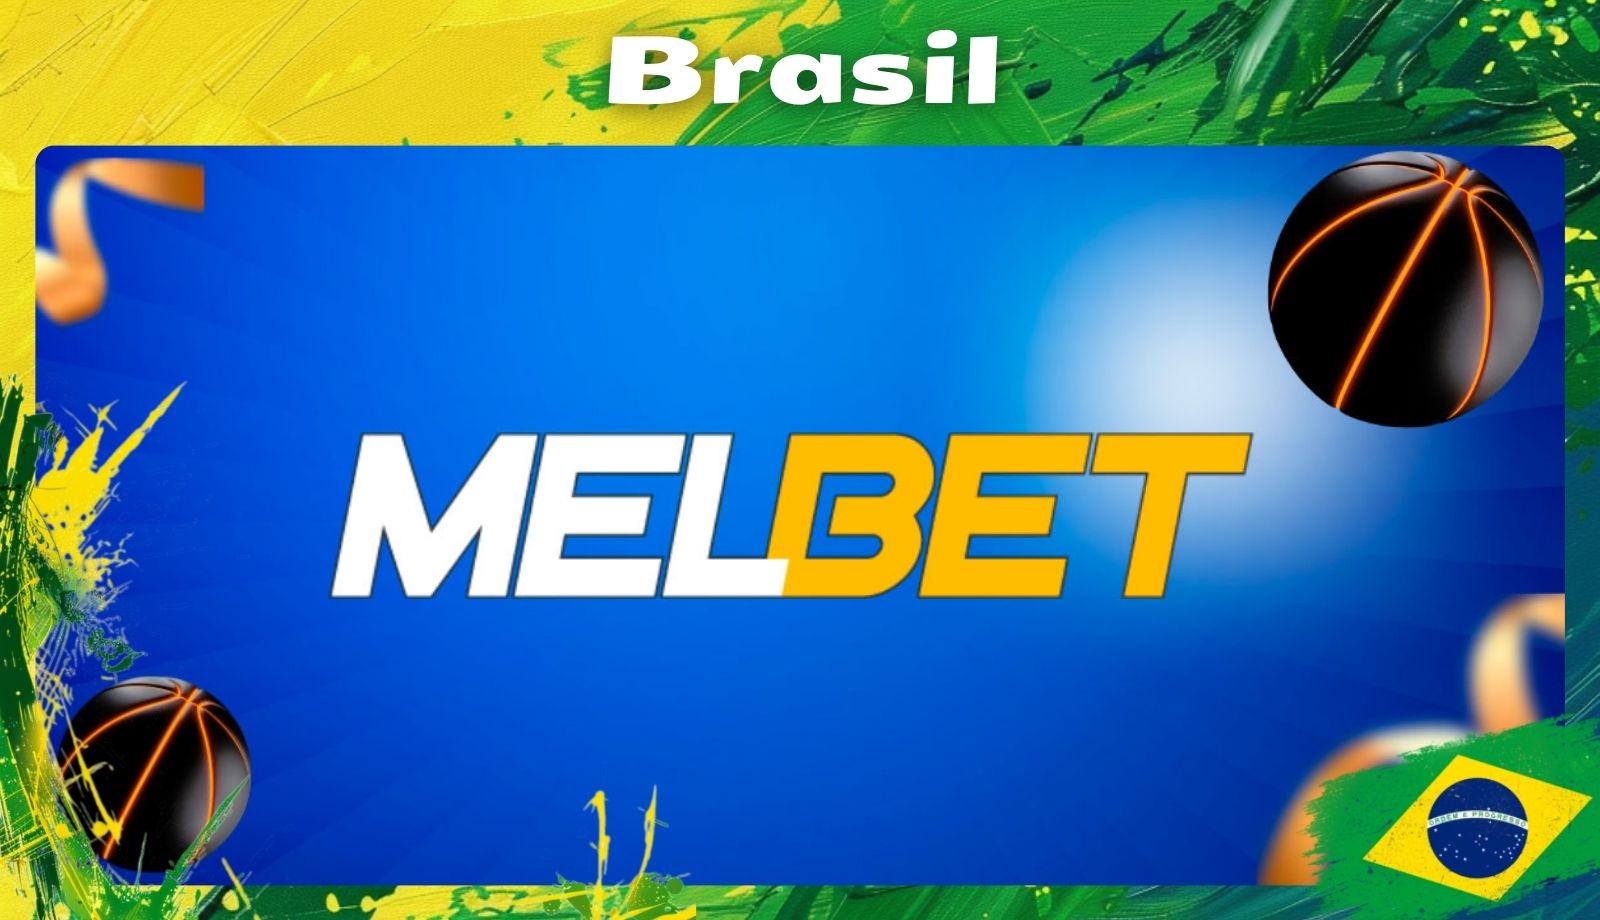 Melbet esportivas on-line site guia no Brasil